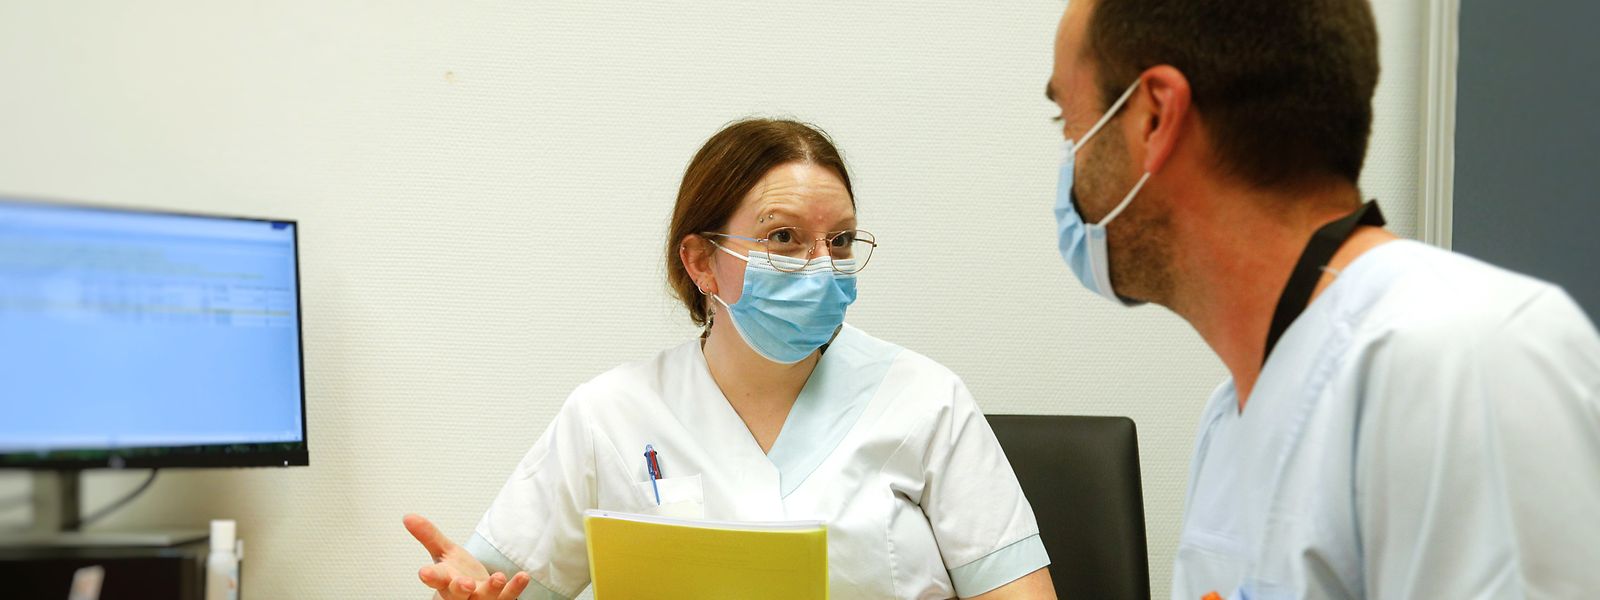 Sur les 30.400 professionnels de santé travaillant au Luxembourg, 19% résident dans la région du Grand Est.